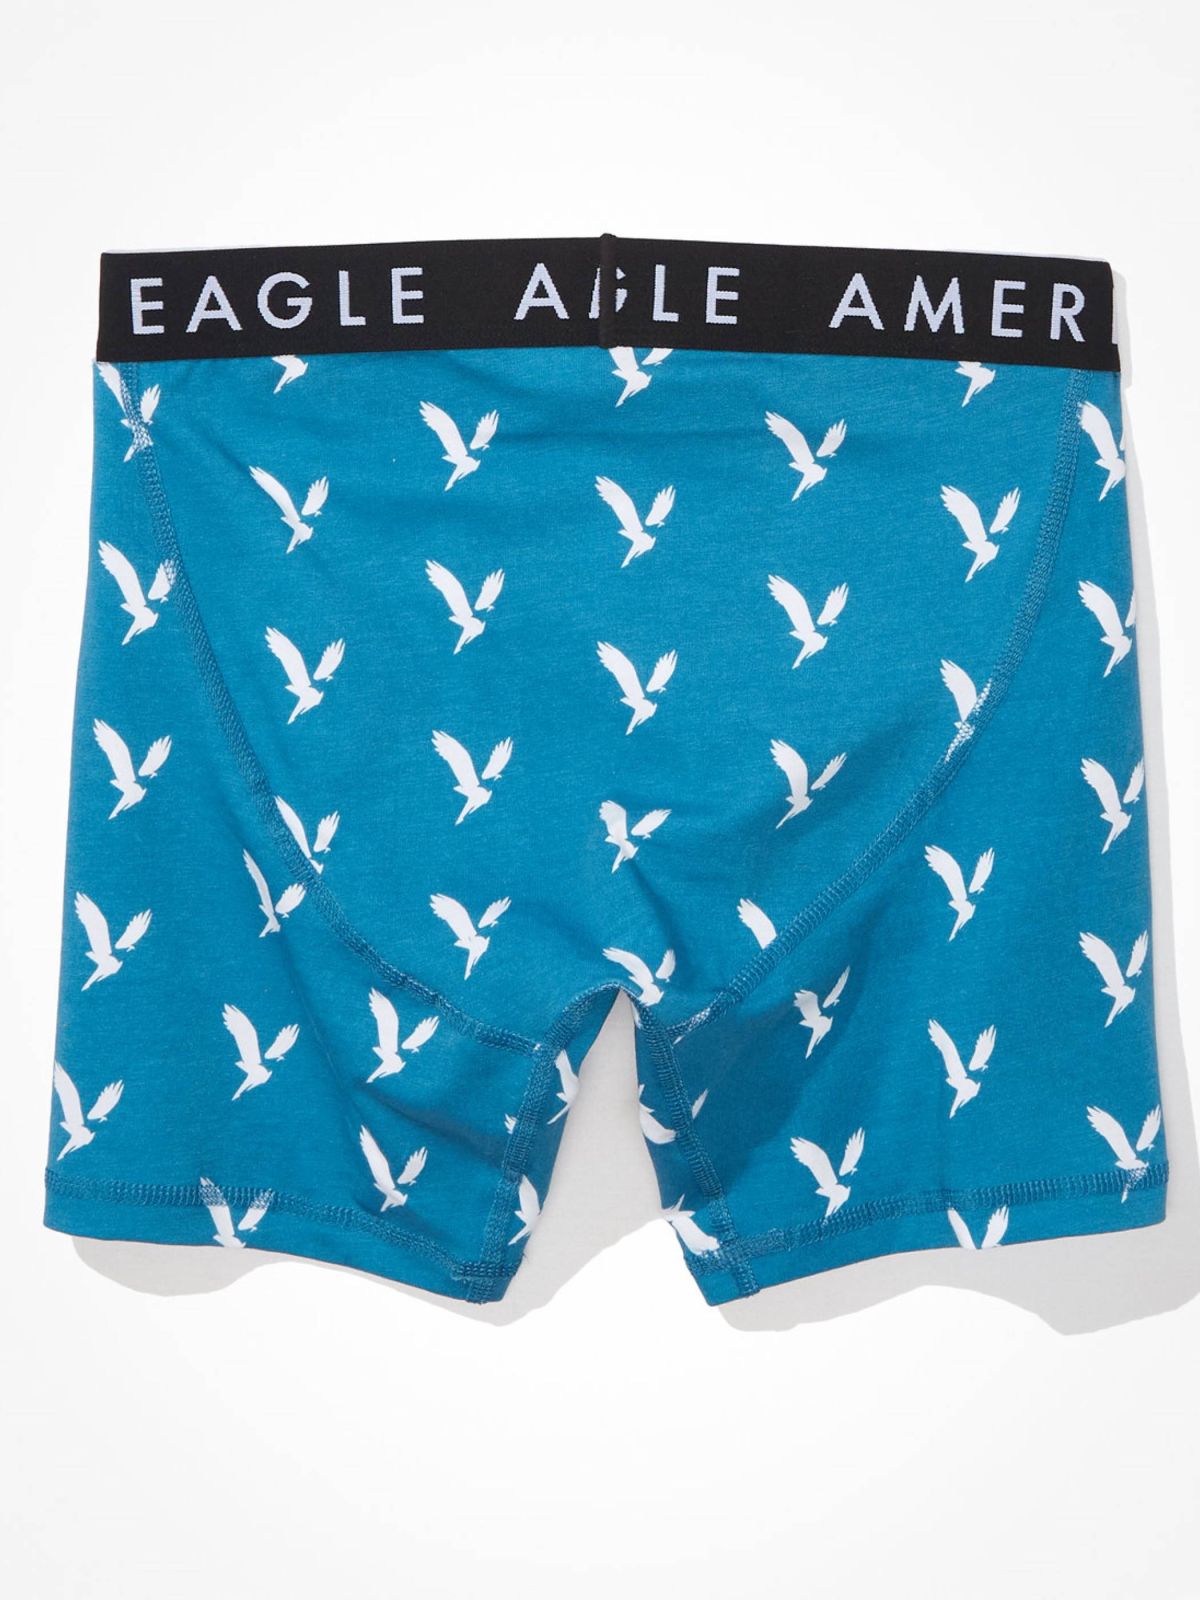  תחתוני בוקסר בהדפס לוגו של AMERICAN EAGLE